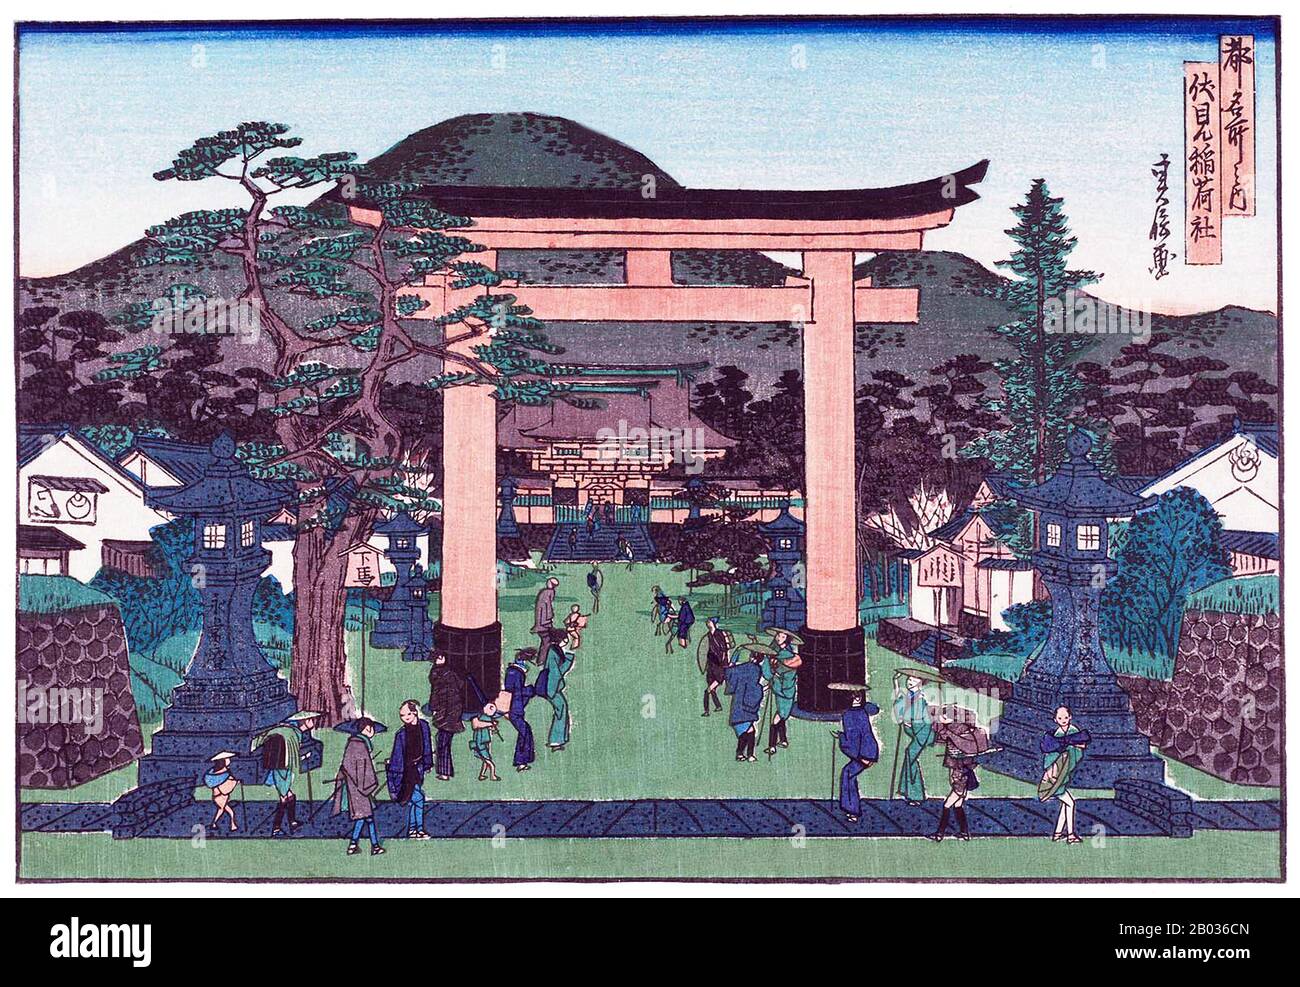 Sadanobus kleine Landschaften von Kyoto und Osaka wurden sehr mit dem Edo-Künstler Hiroshige im Sinne produziert. Tatsächlich führte er auch Miniaturkopien einiger der berühmtesten Entwürfe von Hiroshige durch. Kyoto war die Hauptstadt Japans von 1180 bis zum Jahre 1868, als die Hauptstadt zu Beginn der Meiji-Zeit im Jahre 1868 nach Tokio (vorher Edo) verlegt wurde. Sadanobus Holzschnitte von "Berühmten Orten in der Hauptstadt" wurden so gegen Ende der Position Kyotos als japanische Hauptstadt produziert und möglicherweise bis in das erste oder zwei der Meiji-Zeit fortgesetzt. Stockfoto